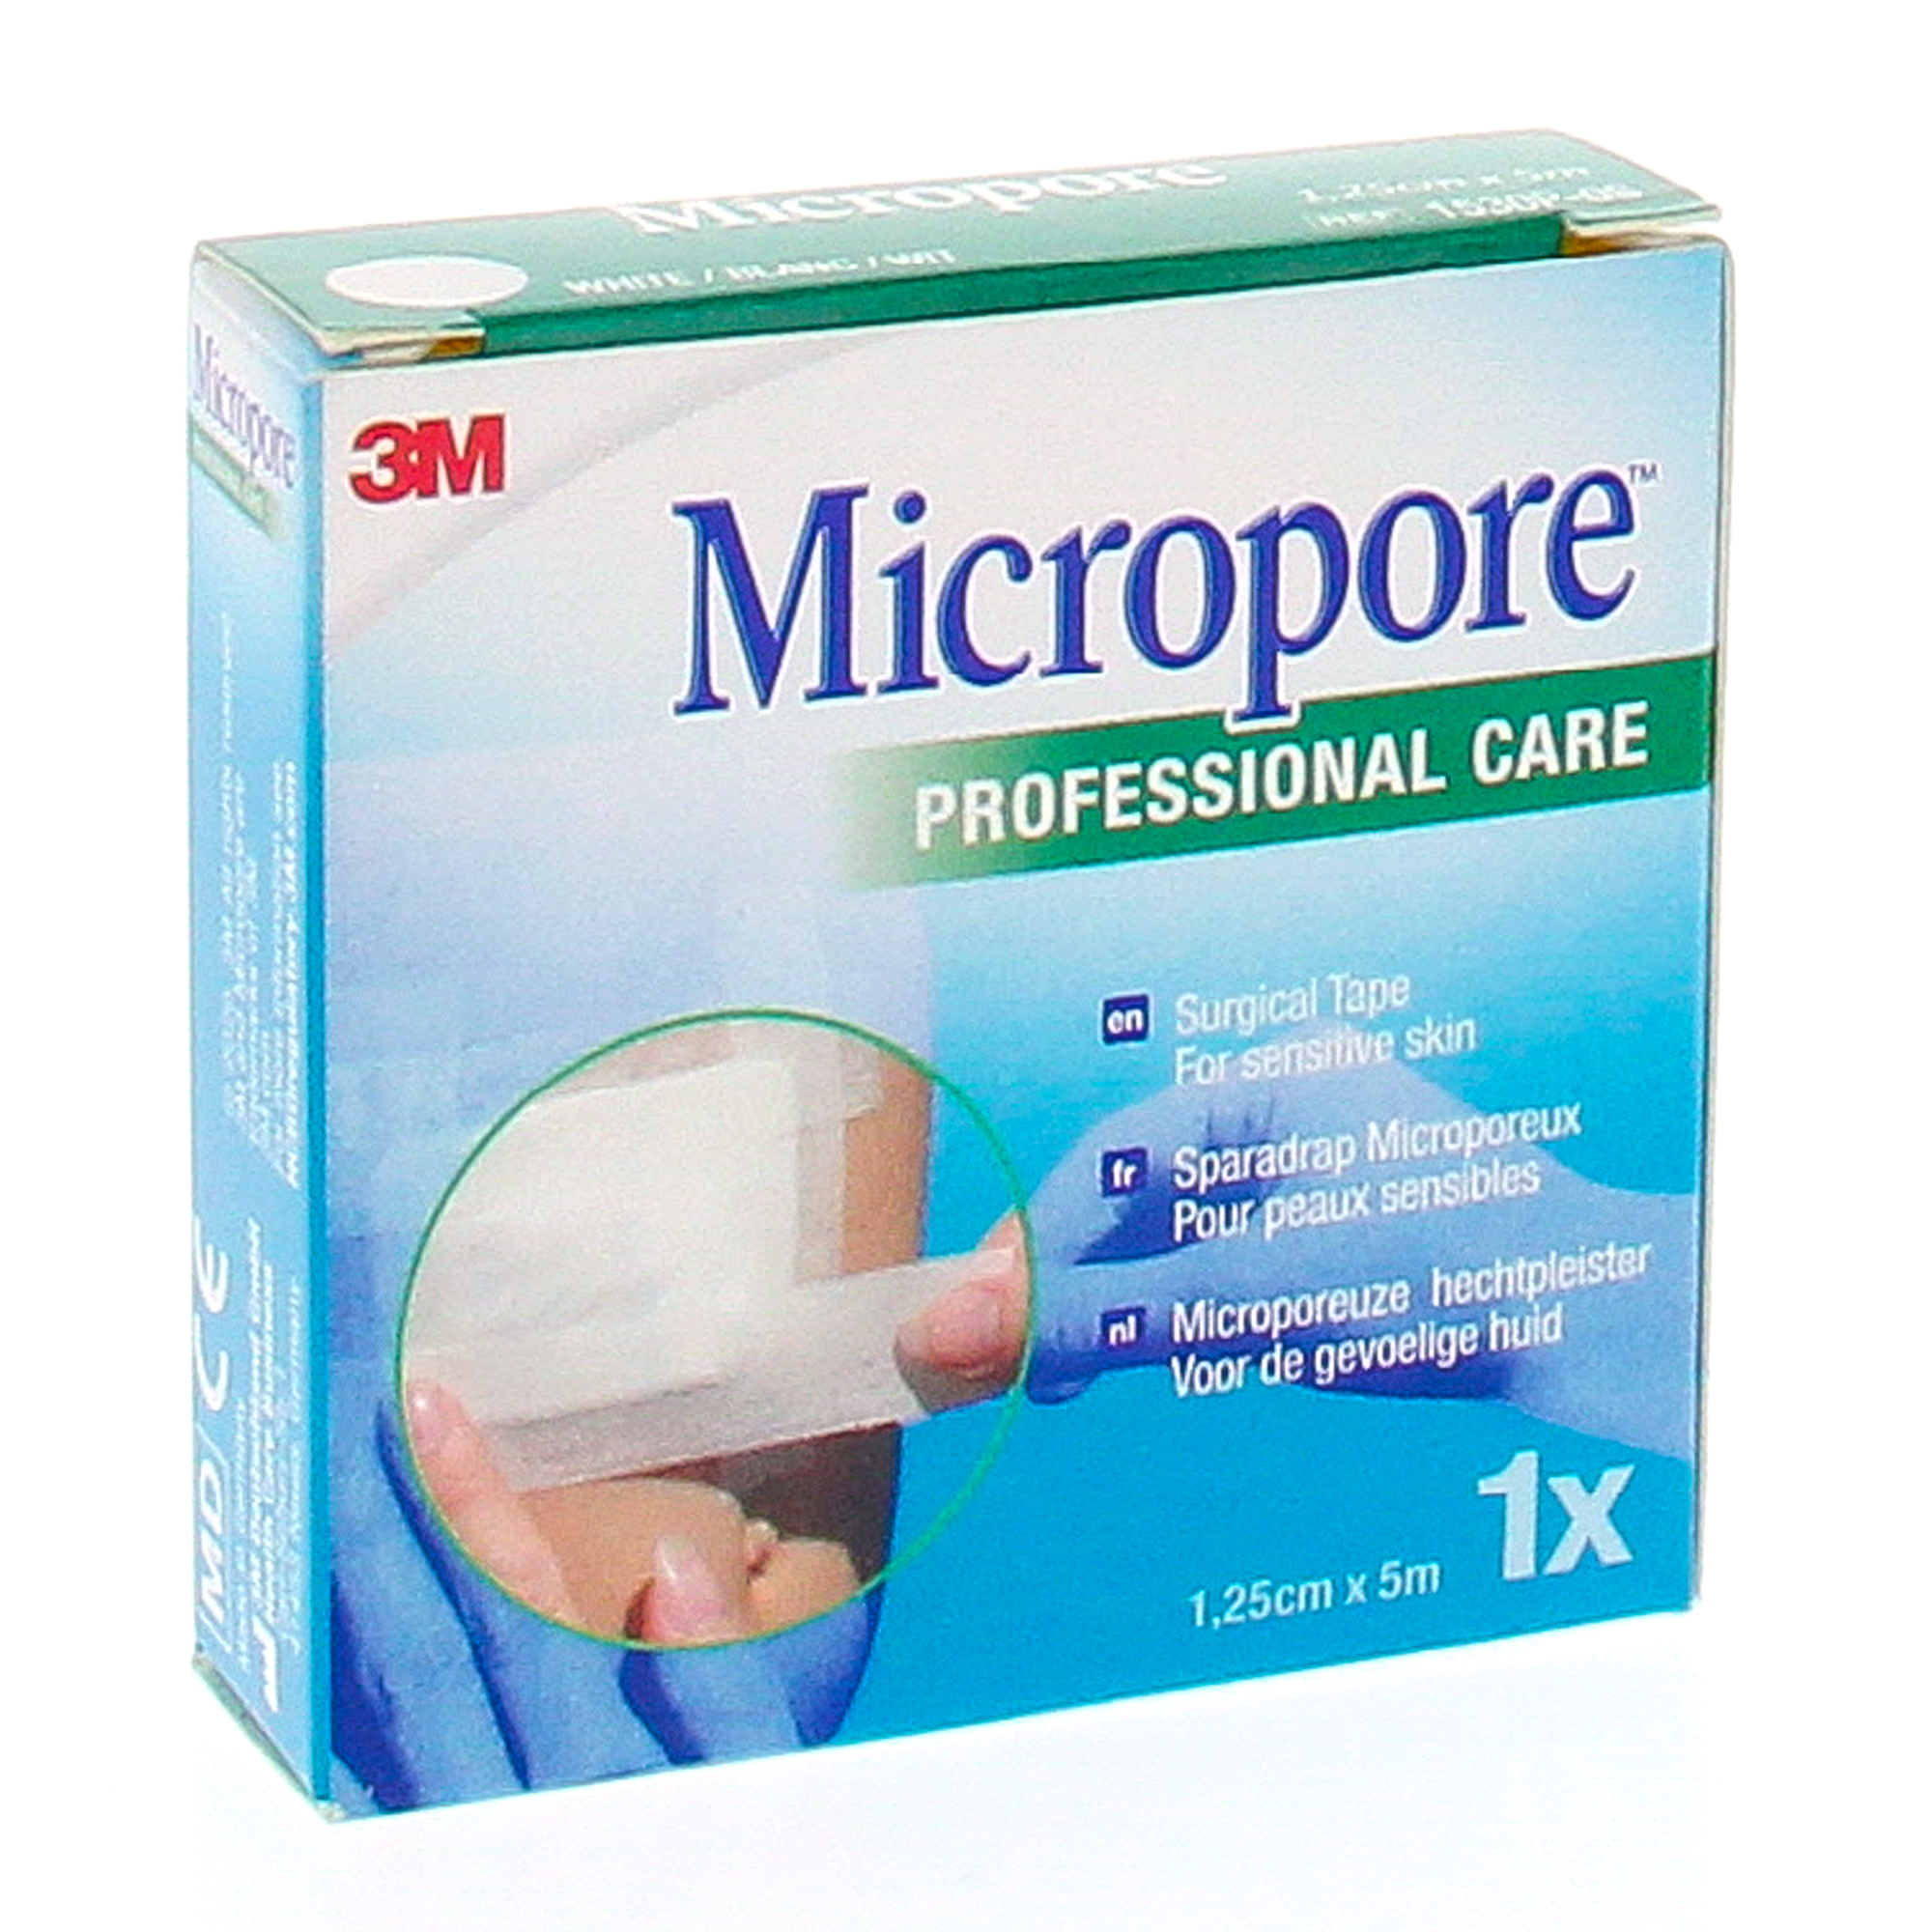 Pansement micropore, sparadrap médical pour pansement